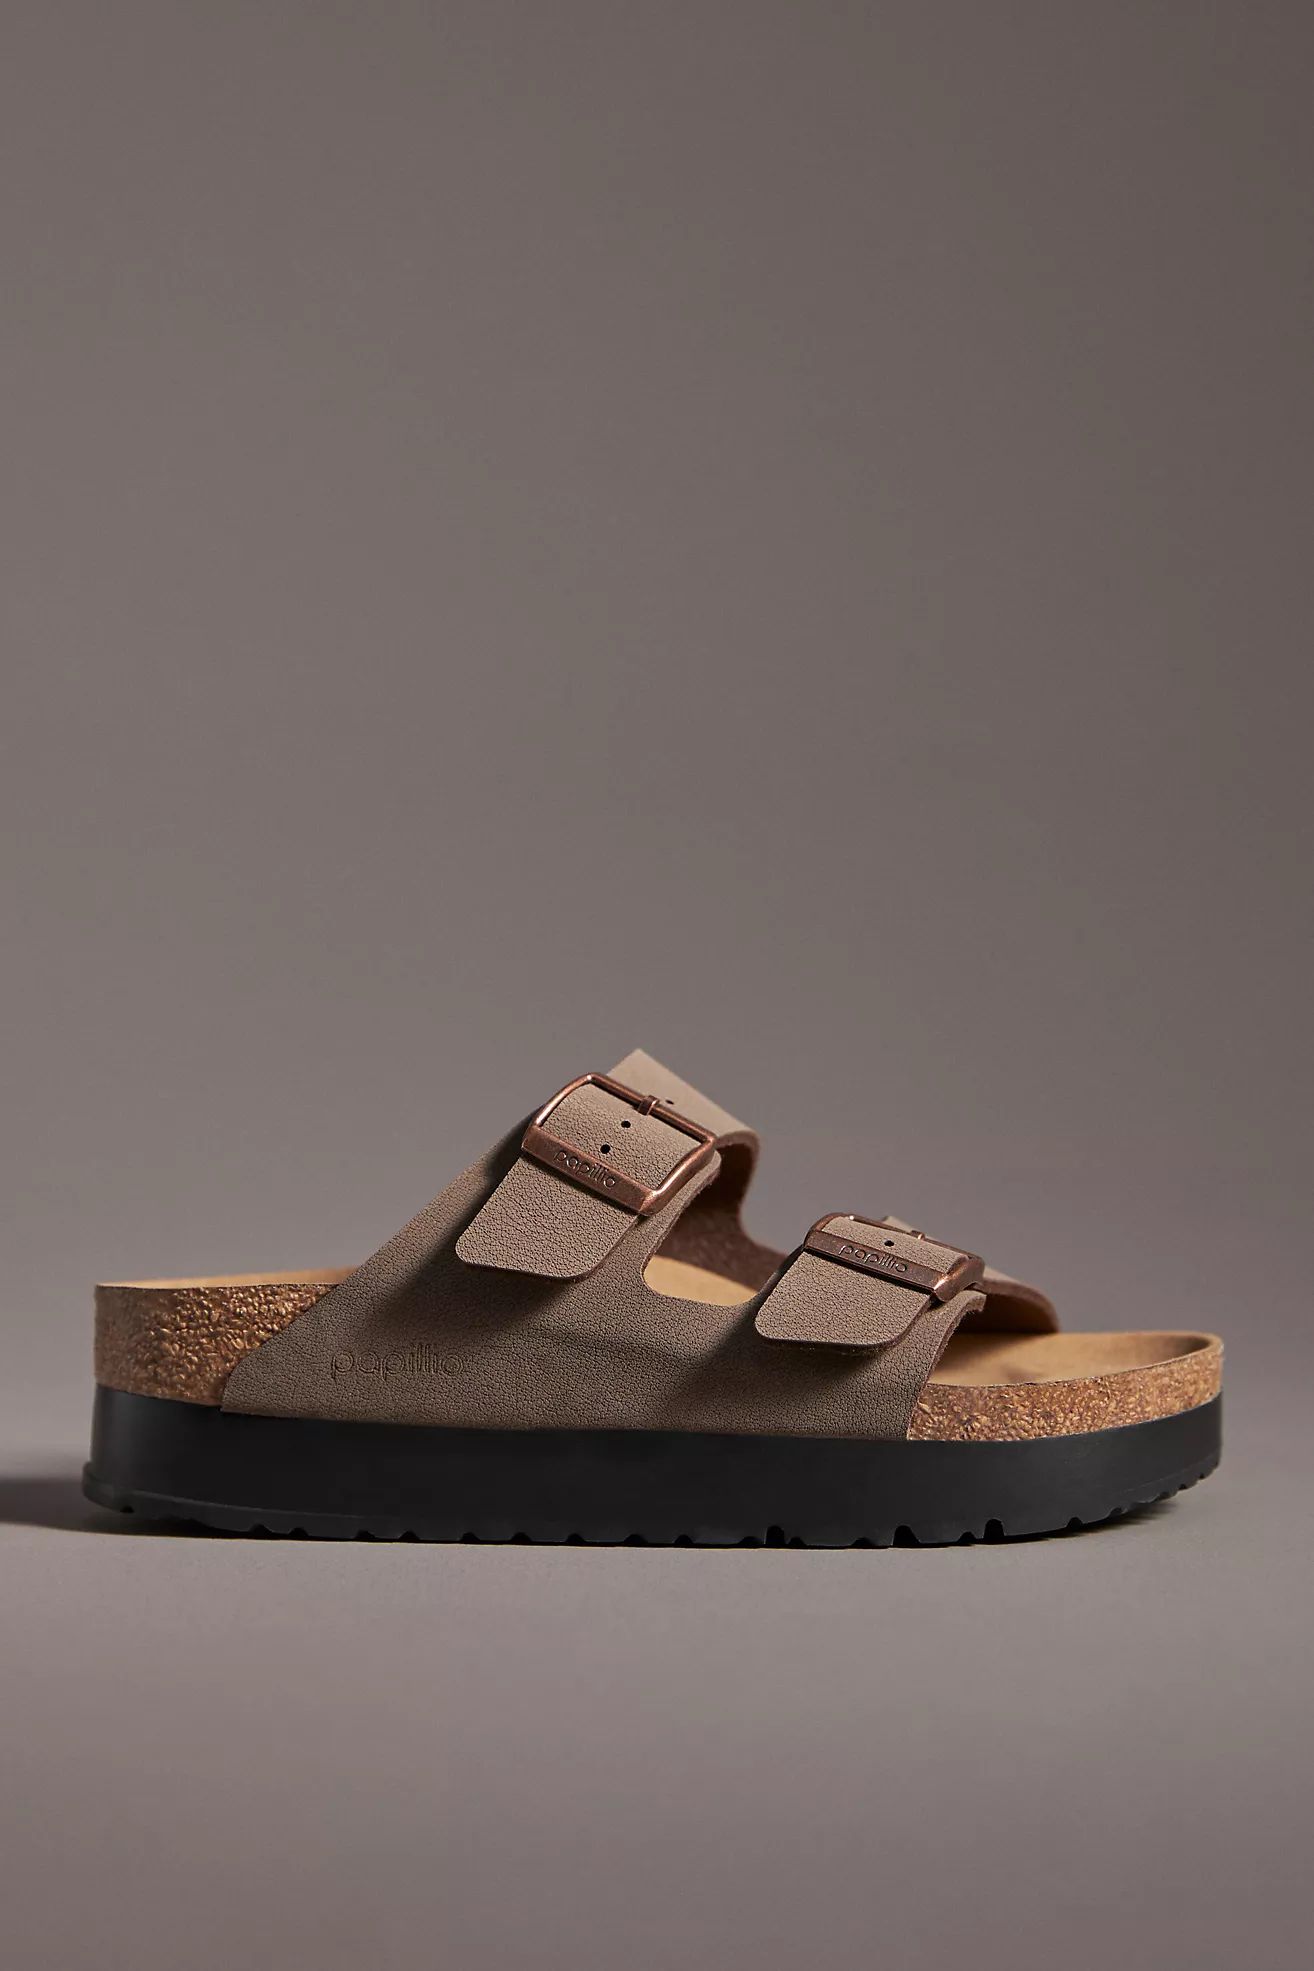 Birkenstock Arizona Flex Platform Sandals | Anthropologie (US)